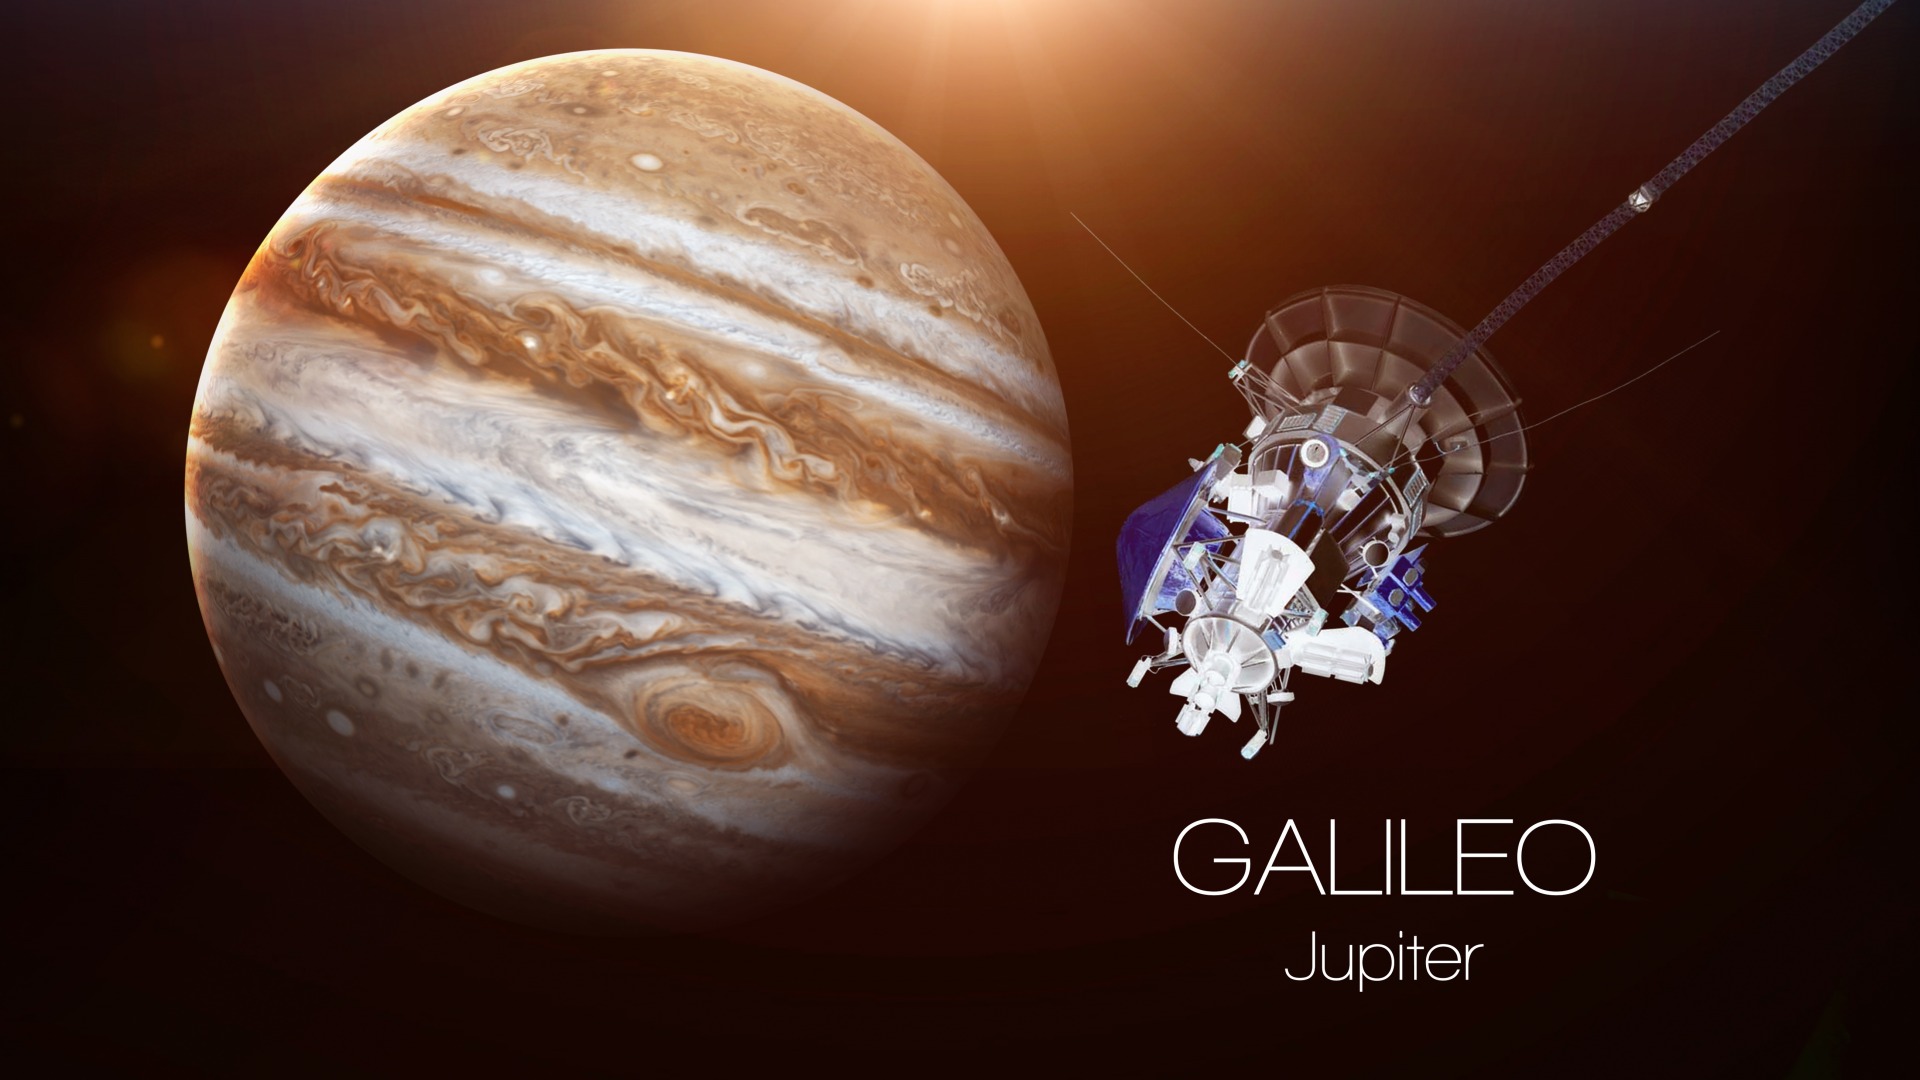 عکس سیاره ژوپیتر مشتری Jupiter planet با کیفیت بالا 